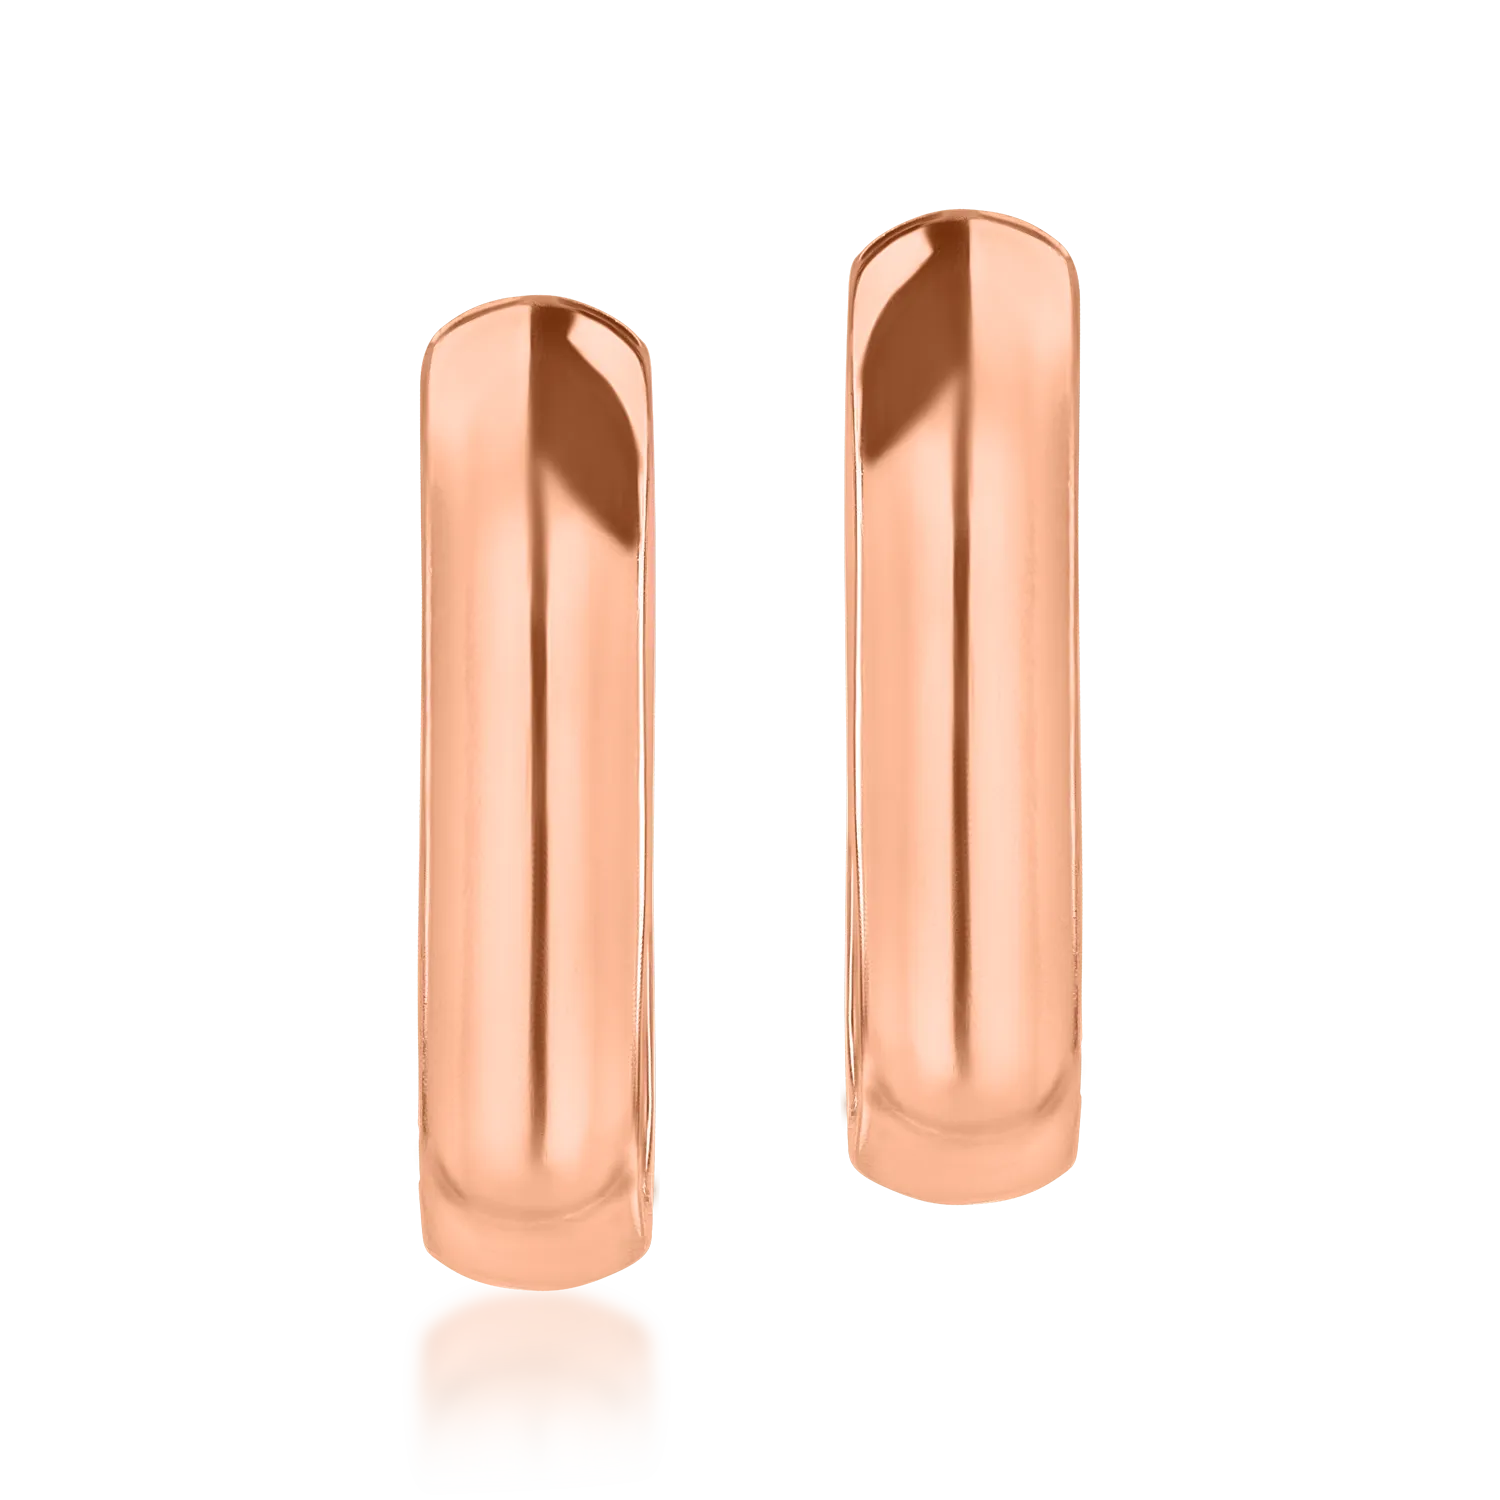 Rose gold oval earrings